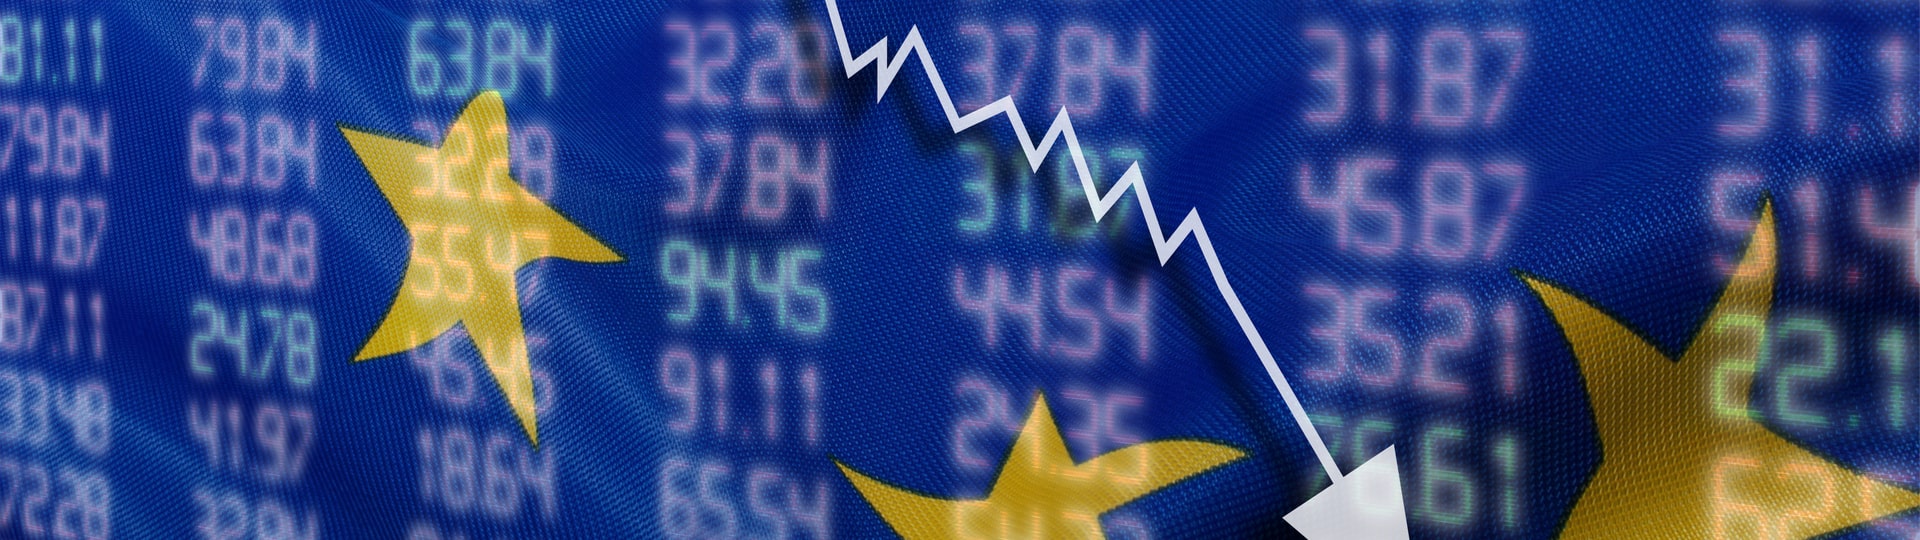 Evropské akcie se kvůli rostoucím obavám z recese propadly